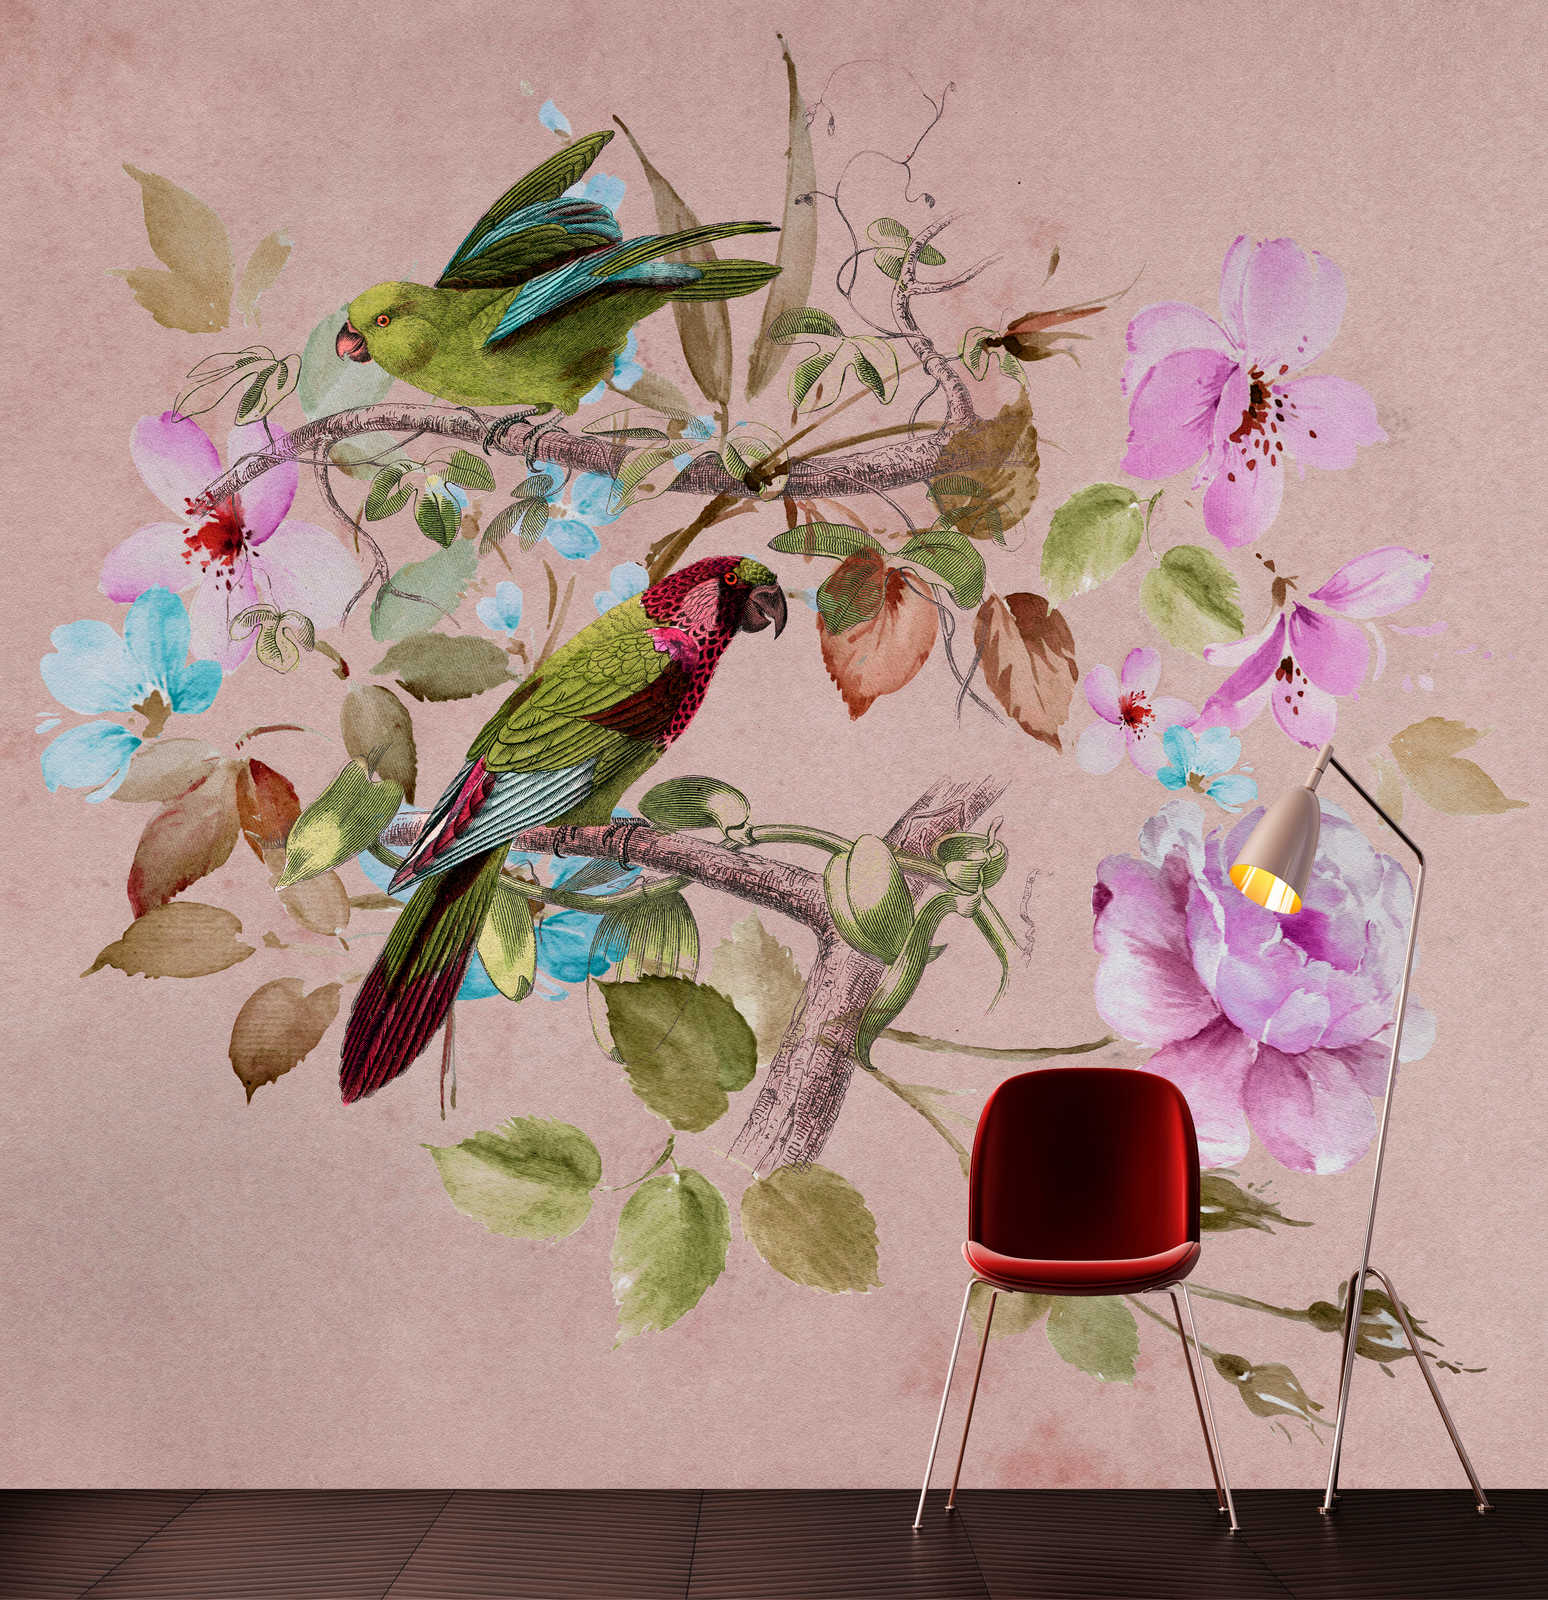             Love Nest 2 - Vintage Behang Roze Aquarel Bloemen & Kleurrijke Vogels
        